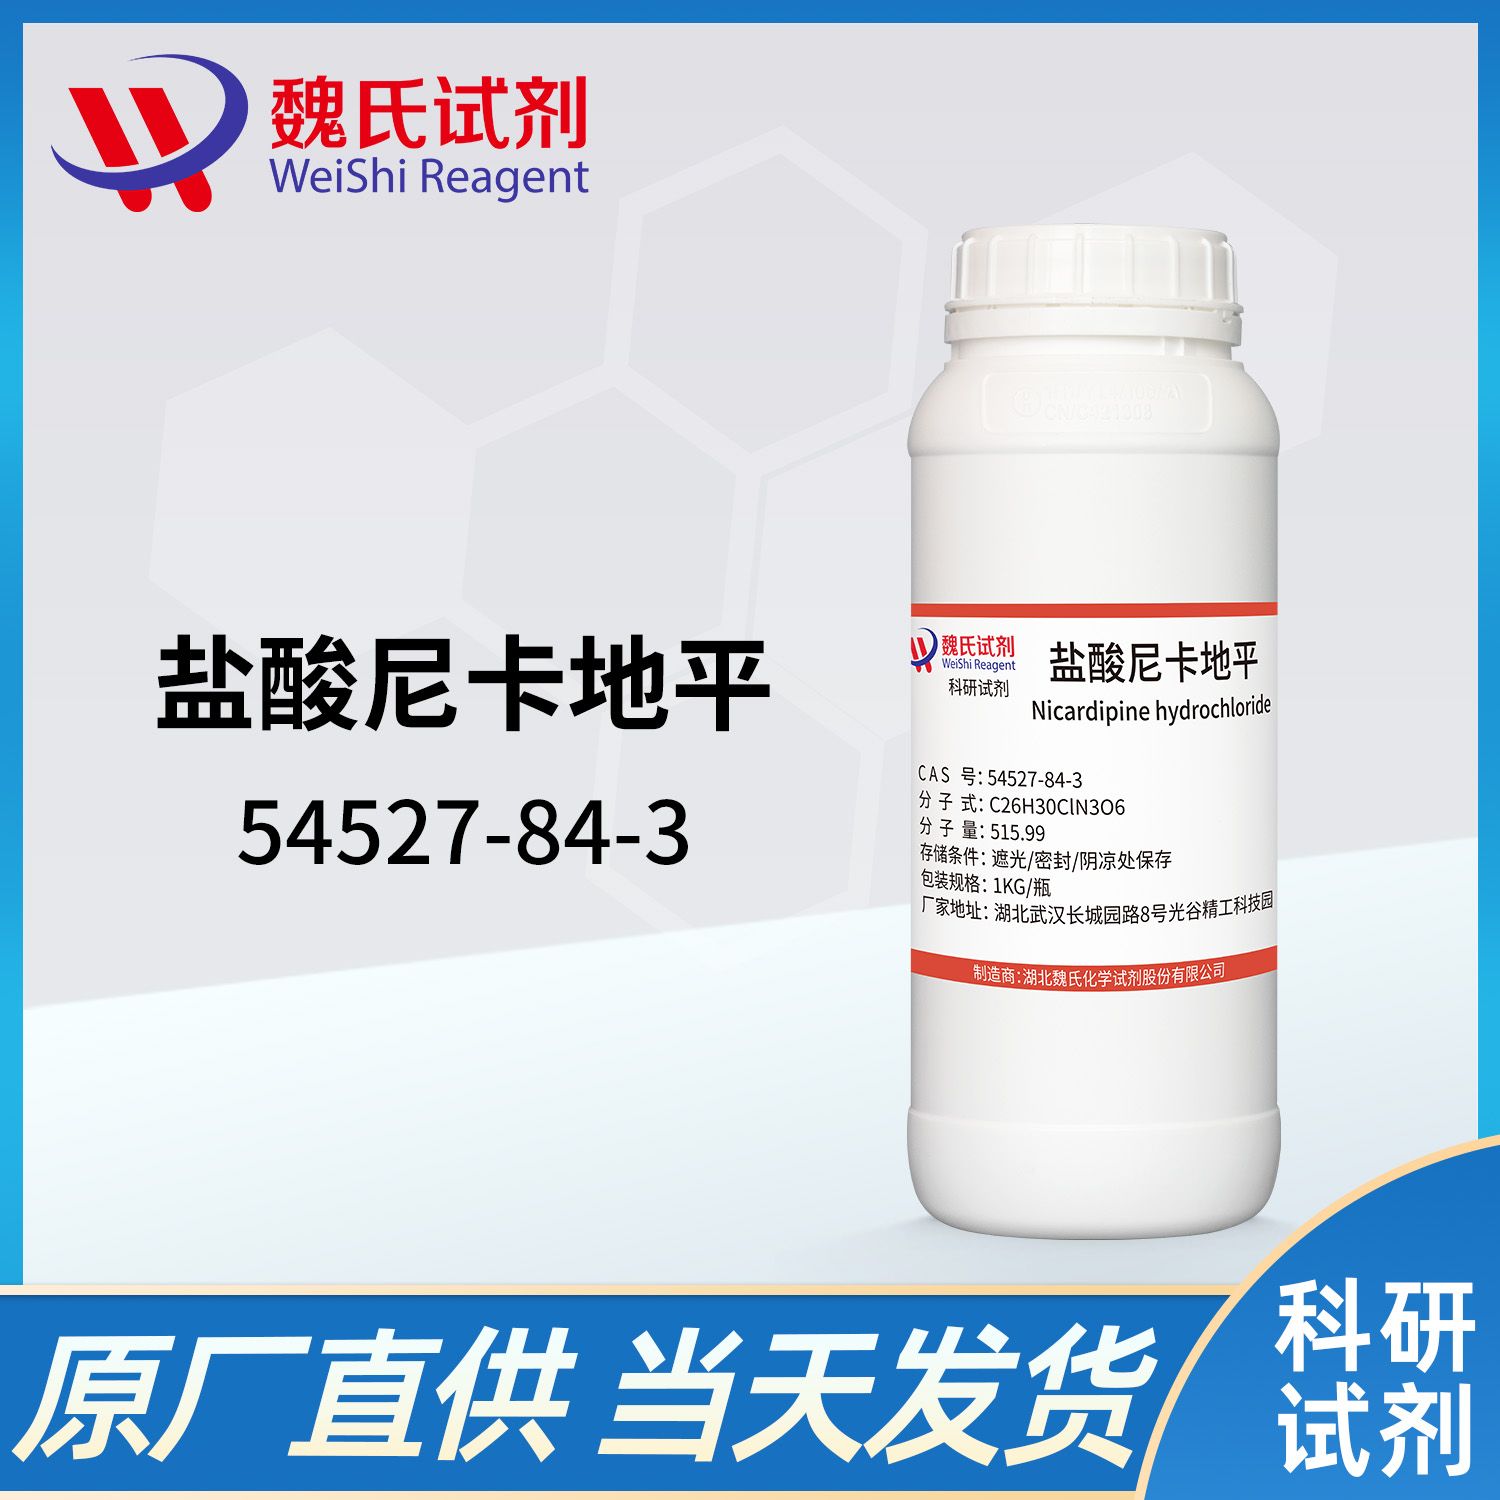 54527-84-3 /盐酸尼卡地平/Nicardipine hydrochloride